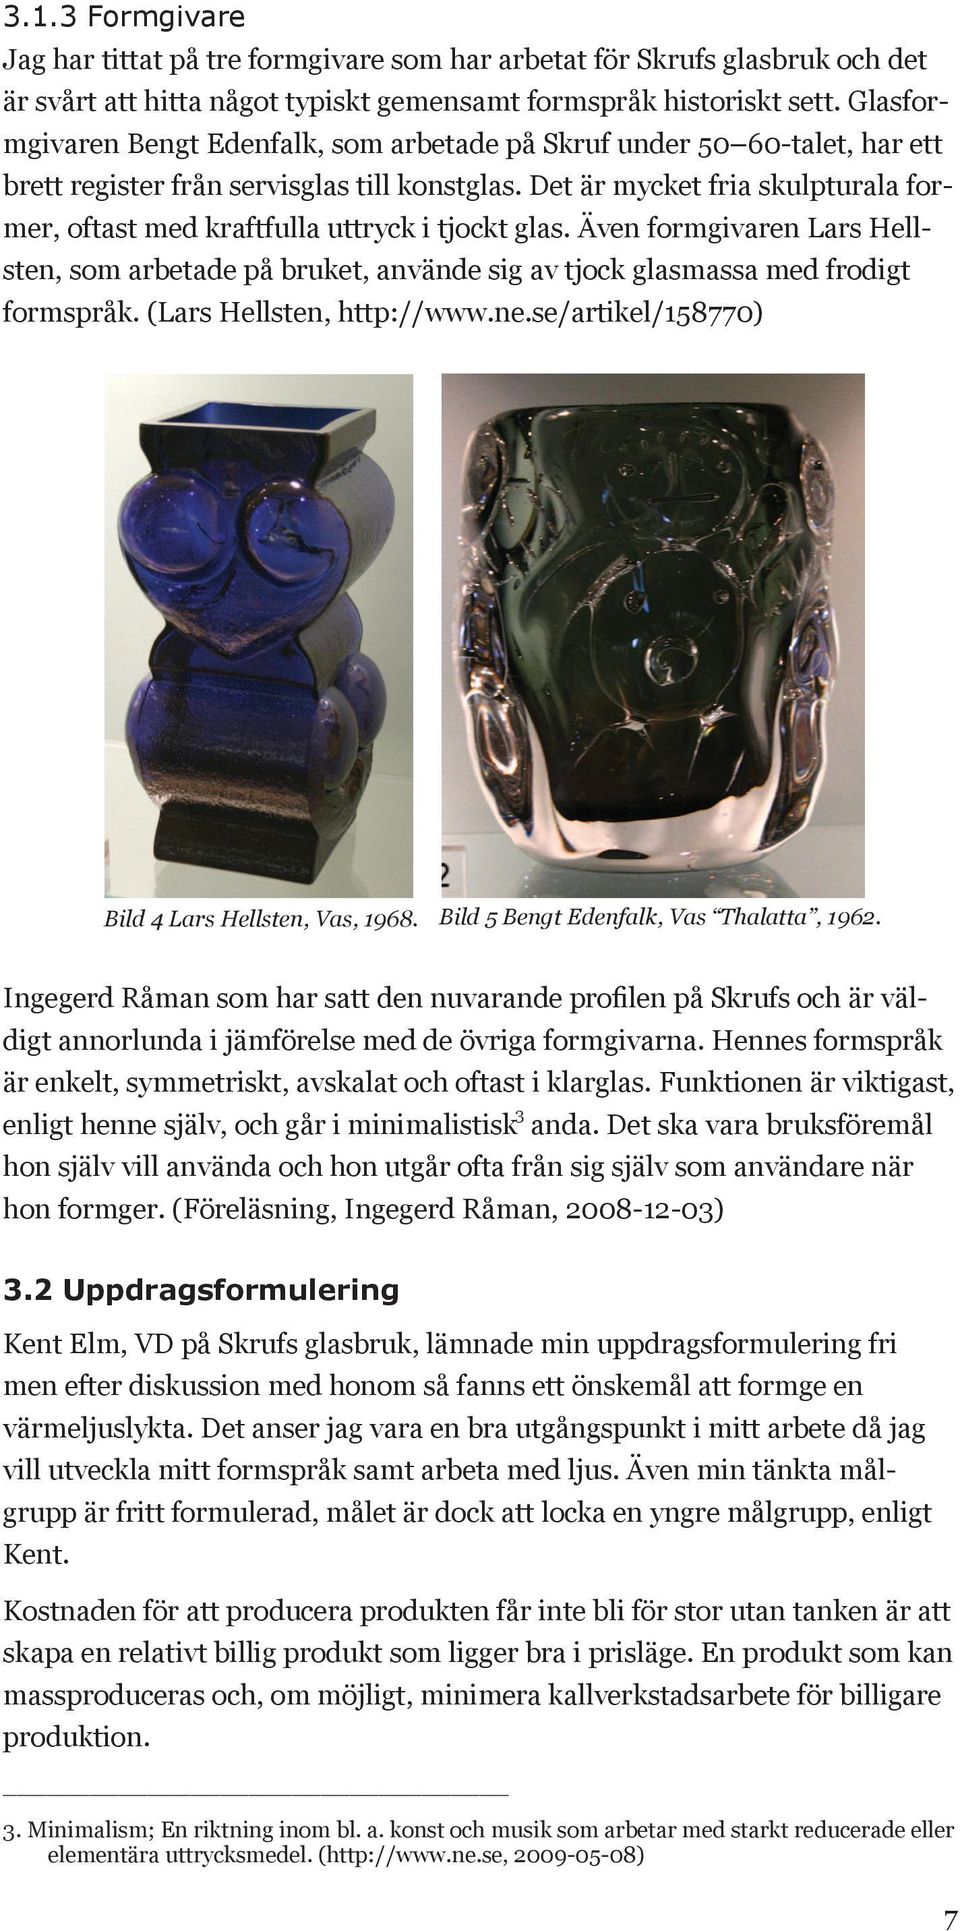 Det är mycket fria skulpturala former, oftast med kraftfulla uttryck i tjockt glas. Även formgivaren Lars Hellsten, som arbetade på bruket, använde sig av tjock glasmassa med frodigt formspråk.